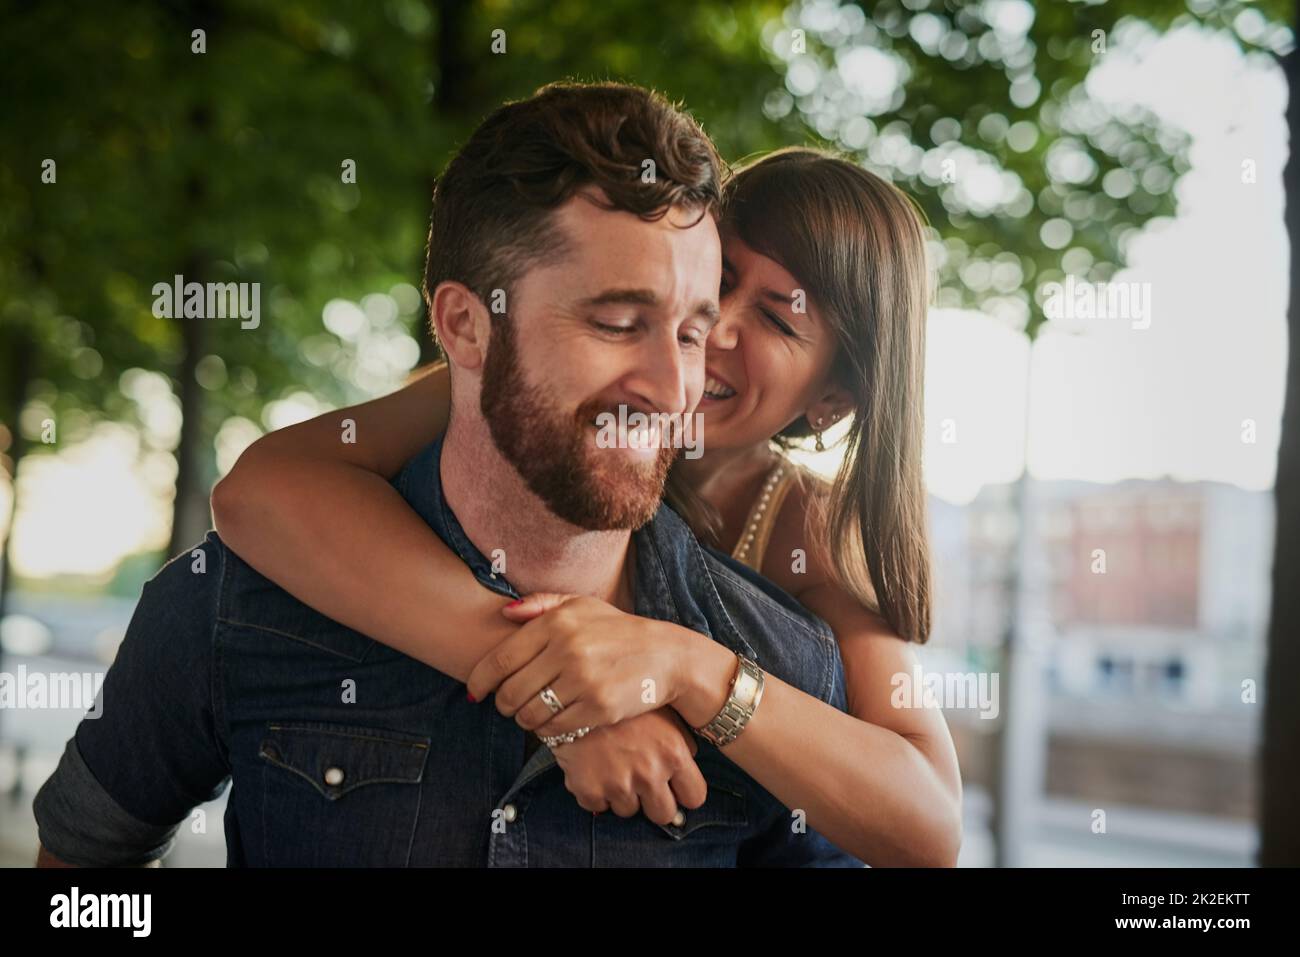 Siempre tienen un tiempo maravilloso juntos. Foto recortada de una joven atractiva abrazando a su novio desde atrás mientras en una cita. Foto de stock